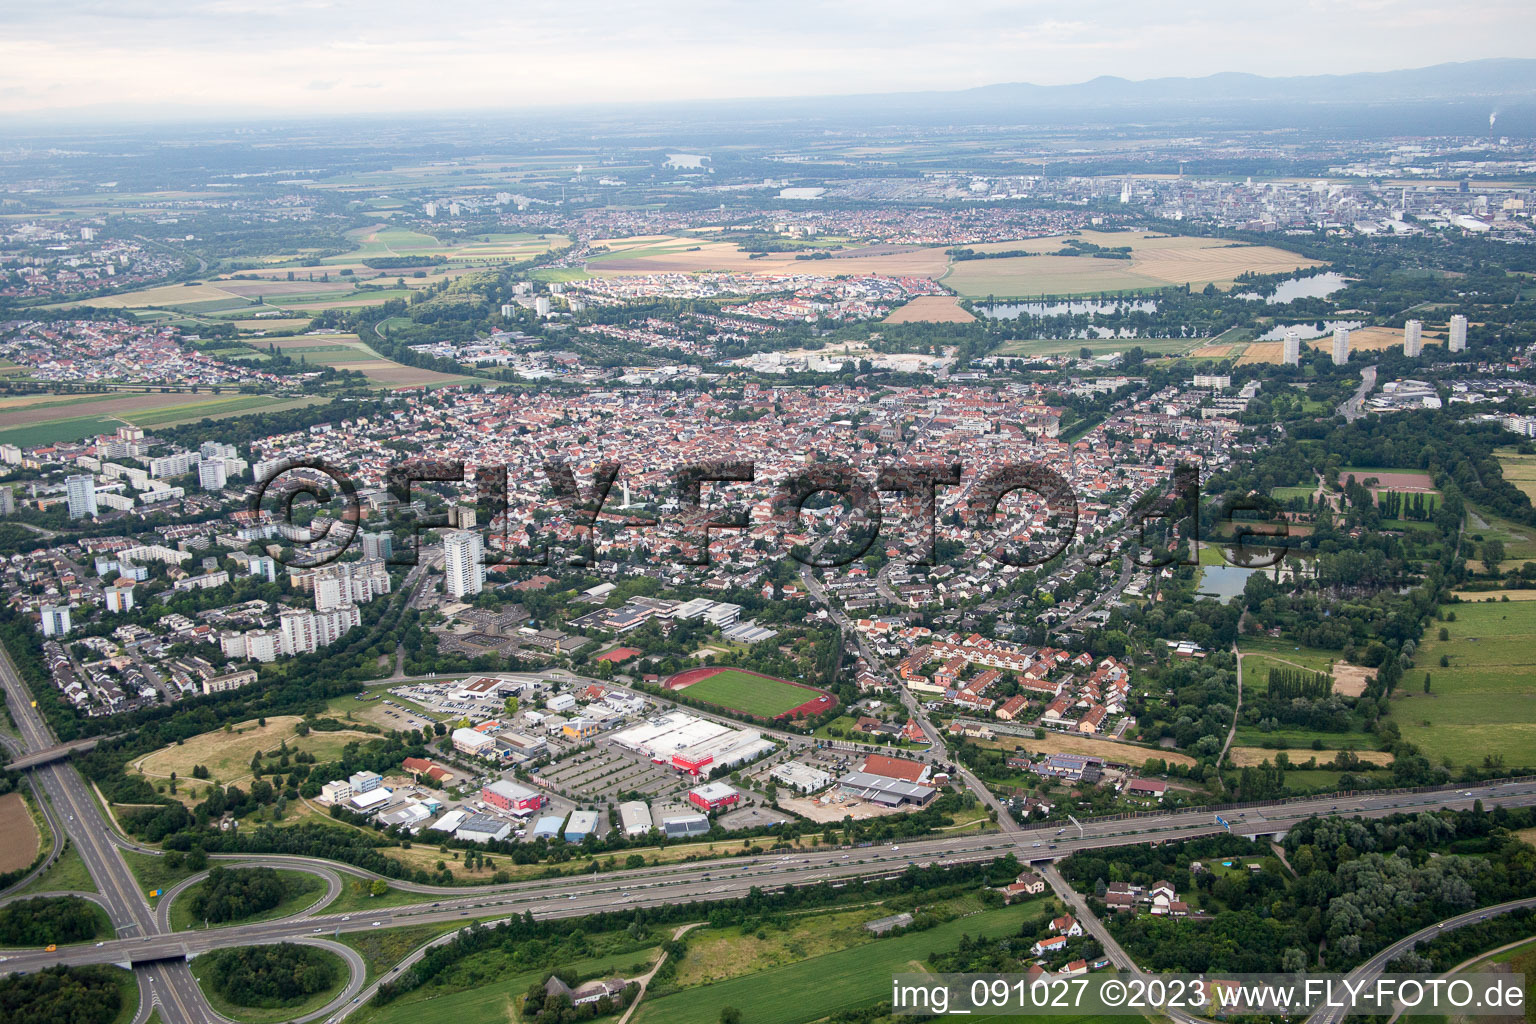 Vue oblique de Quartier Oggersheim in Ludwigshafen am Rhein dans le département Rhénanie-Palatinat, Allemagne